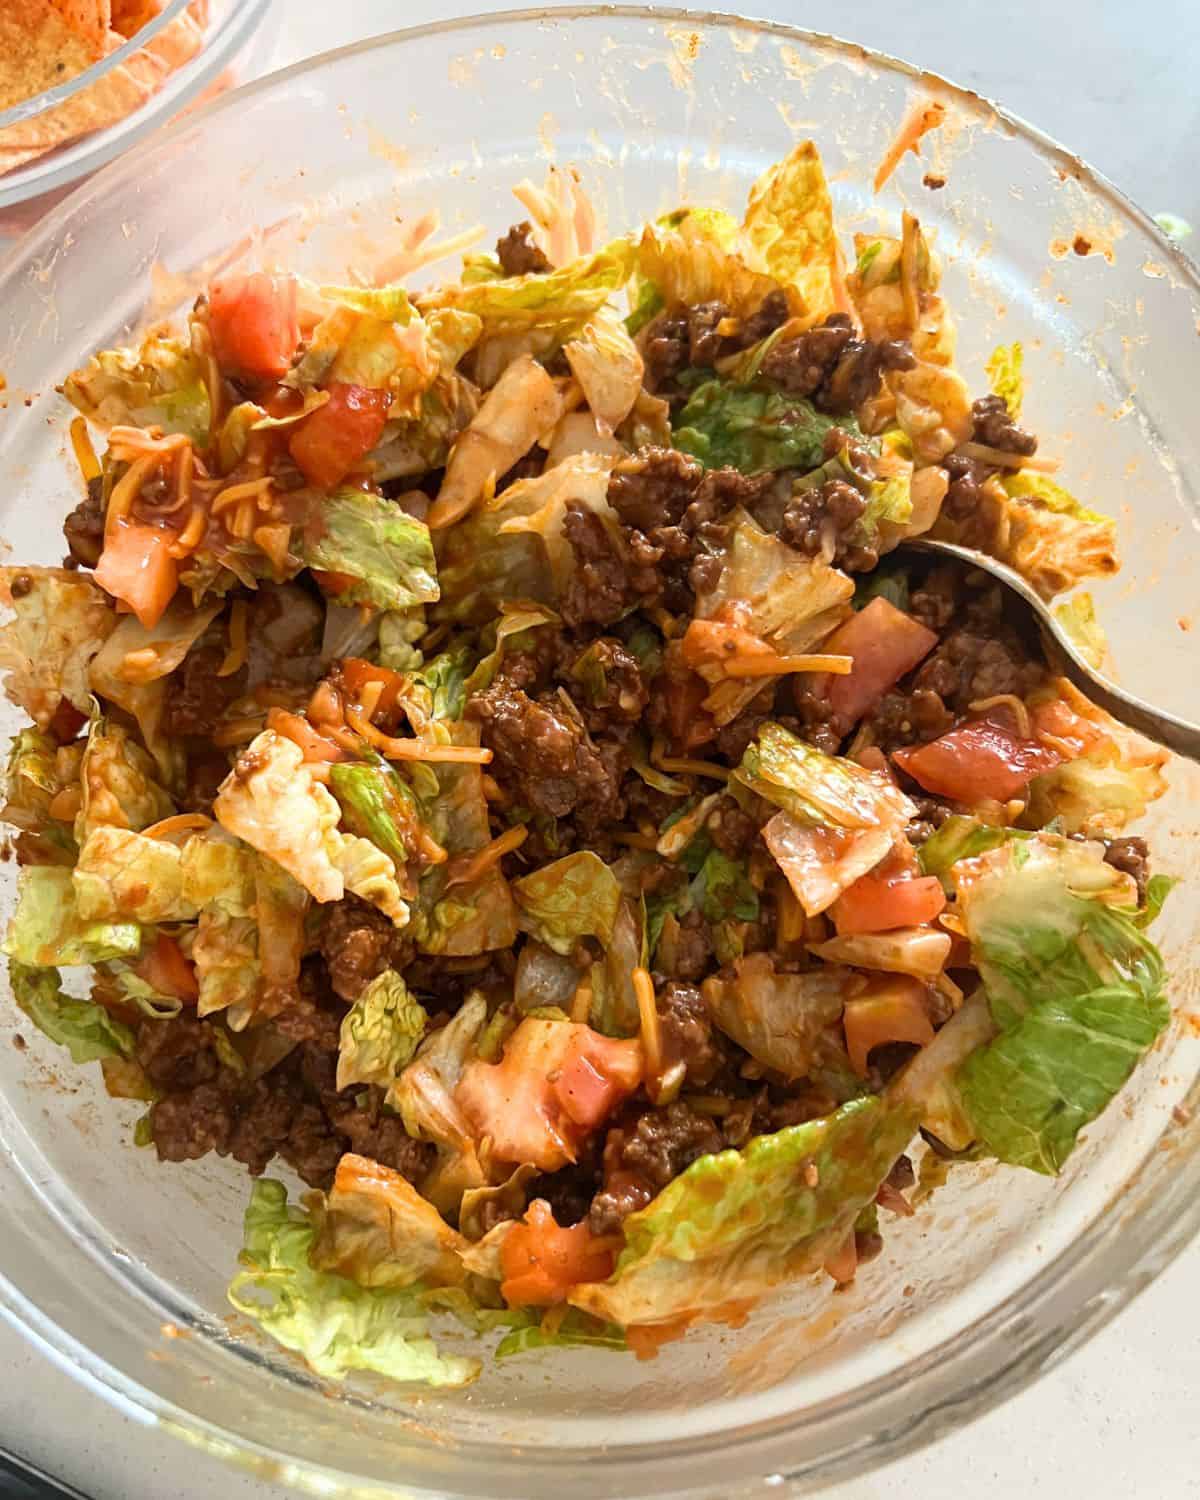 dorito taco salad - All Recipes Club